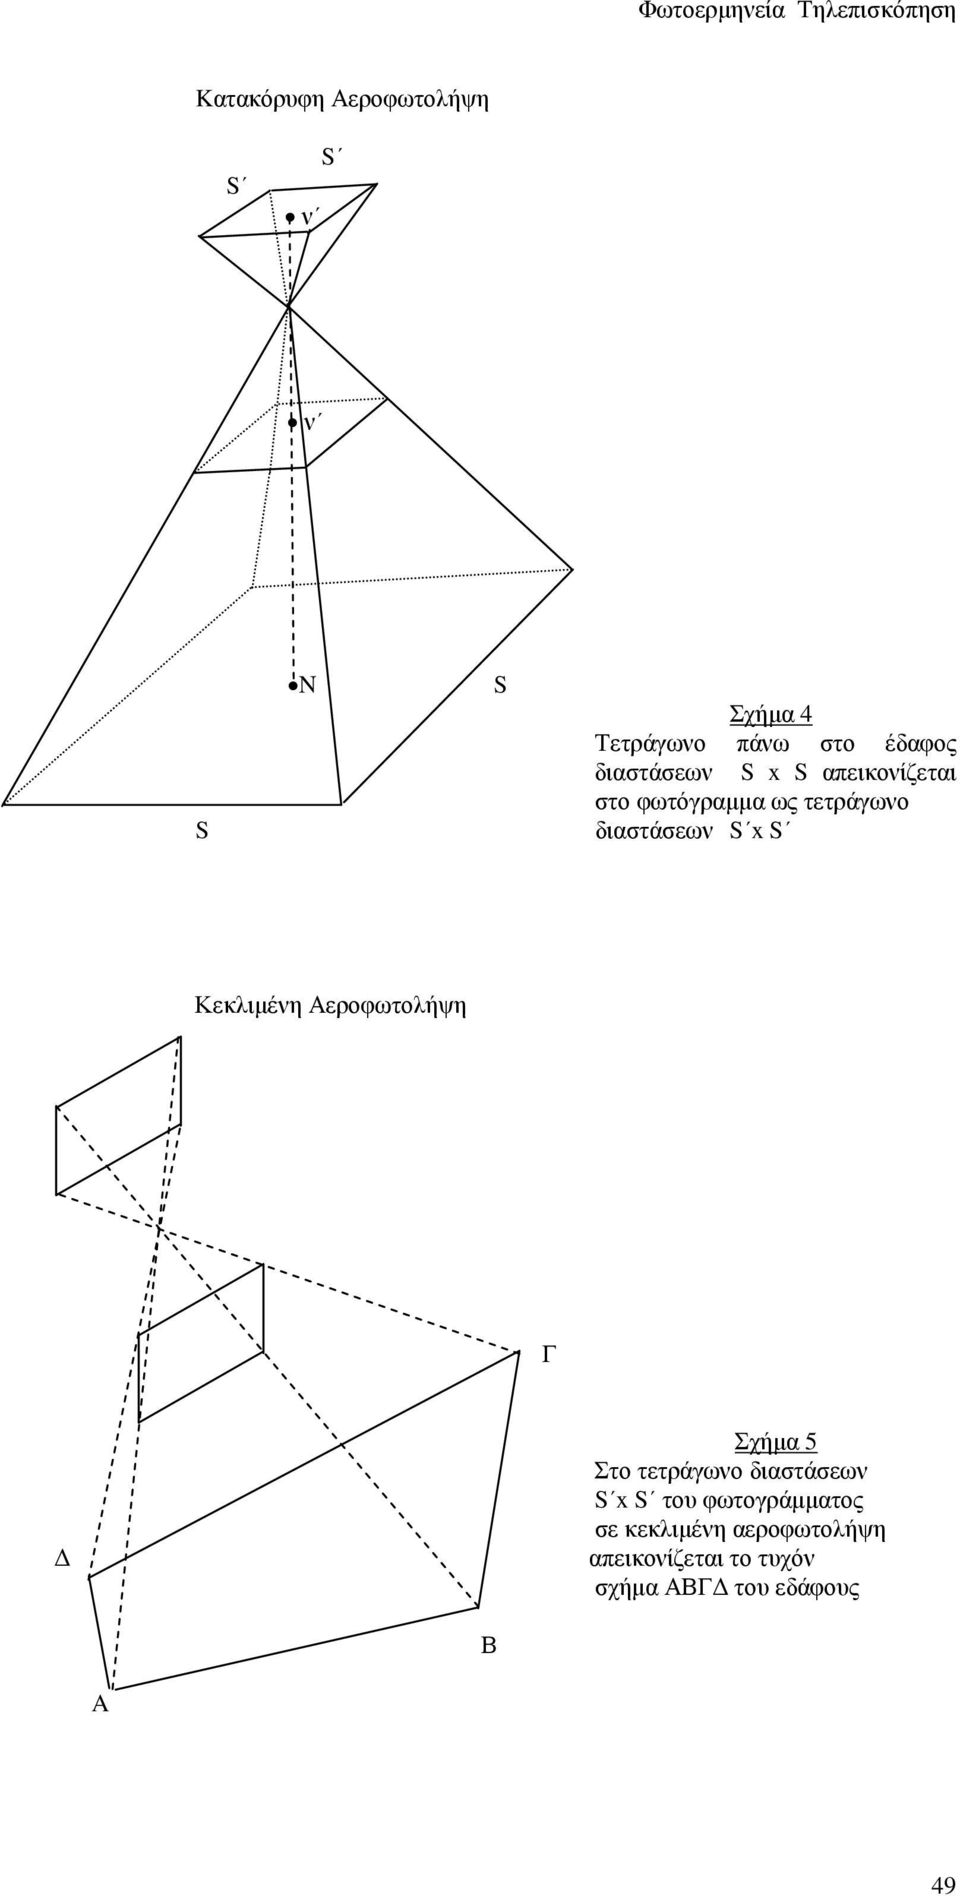 Κεκλιµένη Αεροφωτολήψη Γ Σχήµα 5 Στο τετράγωνο διαστάσεων S x S του